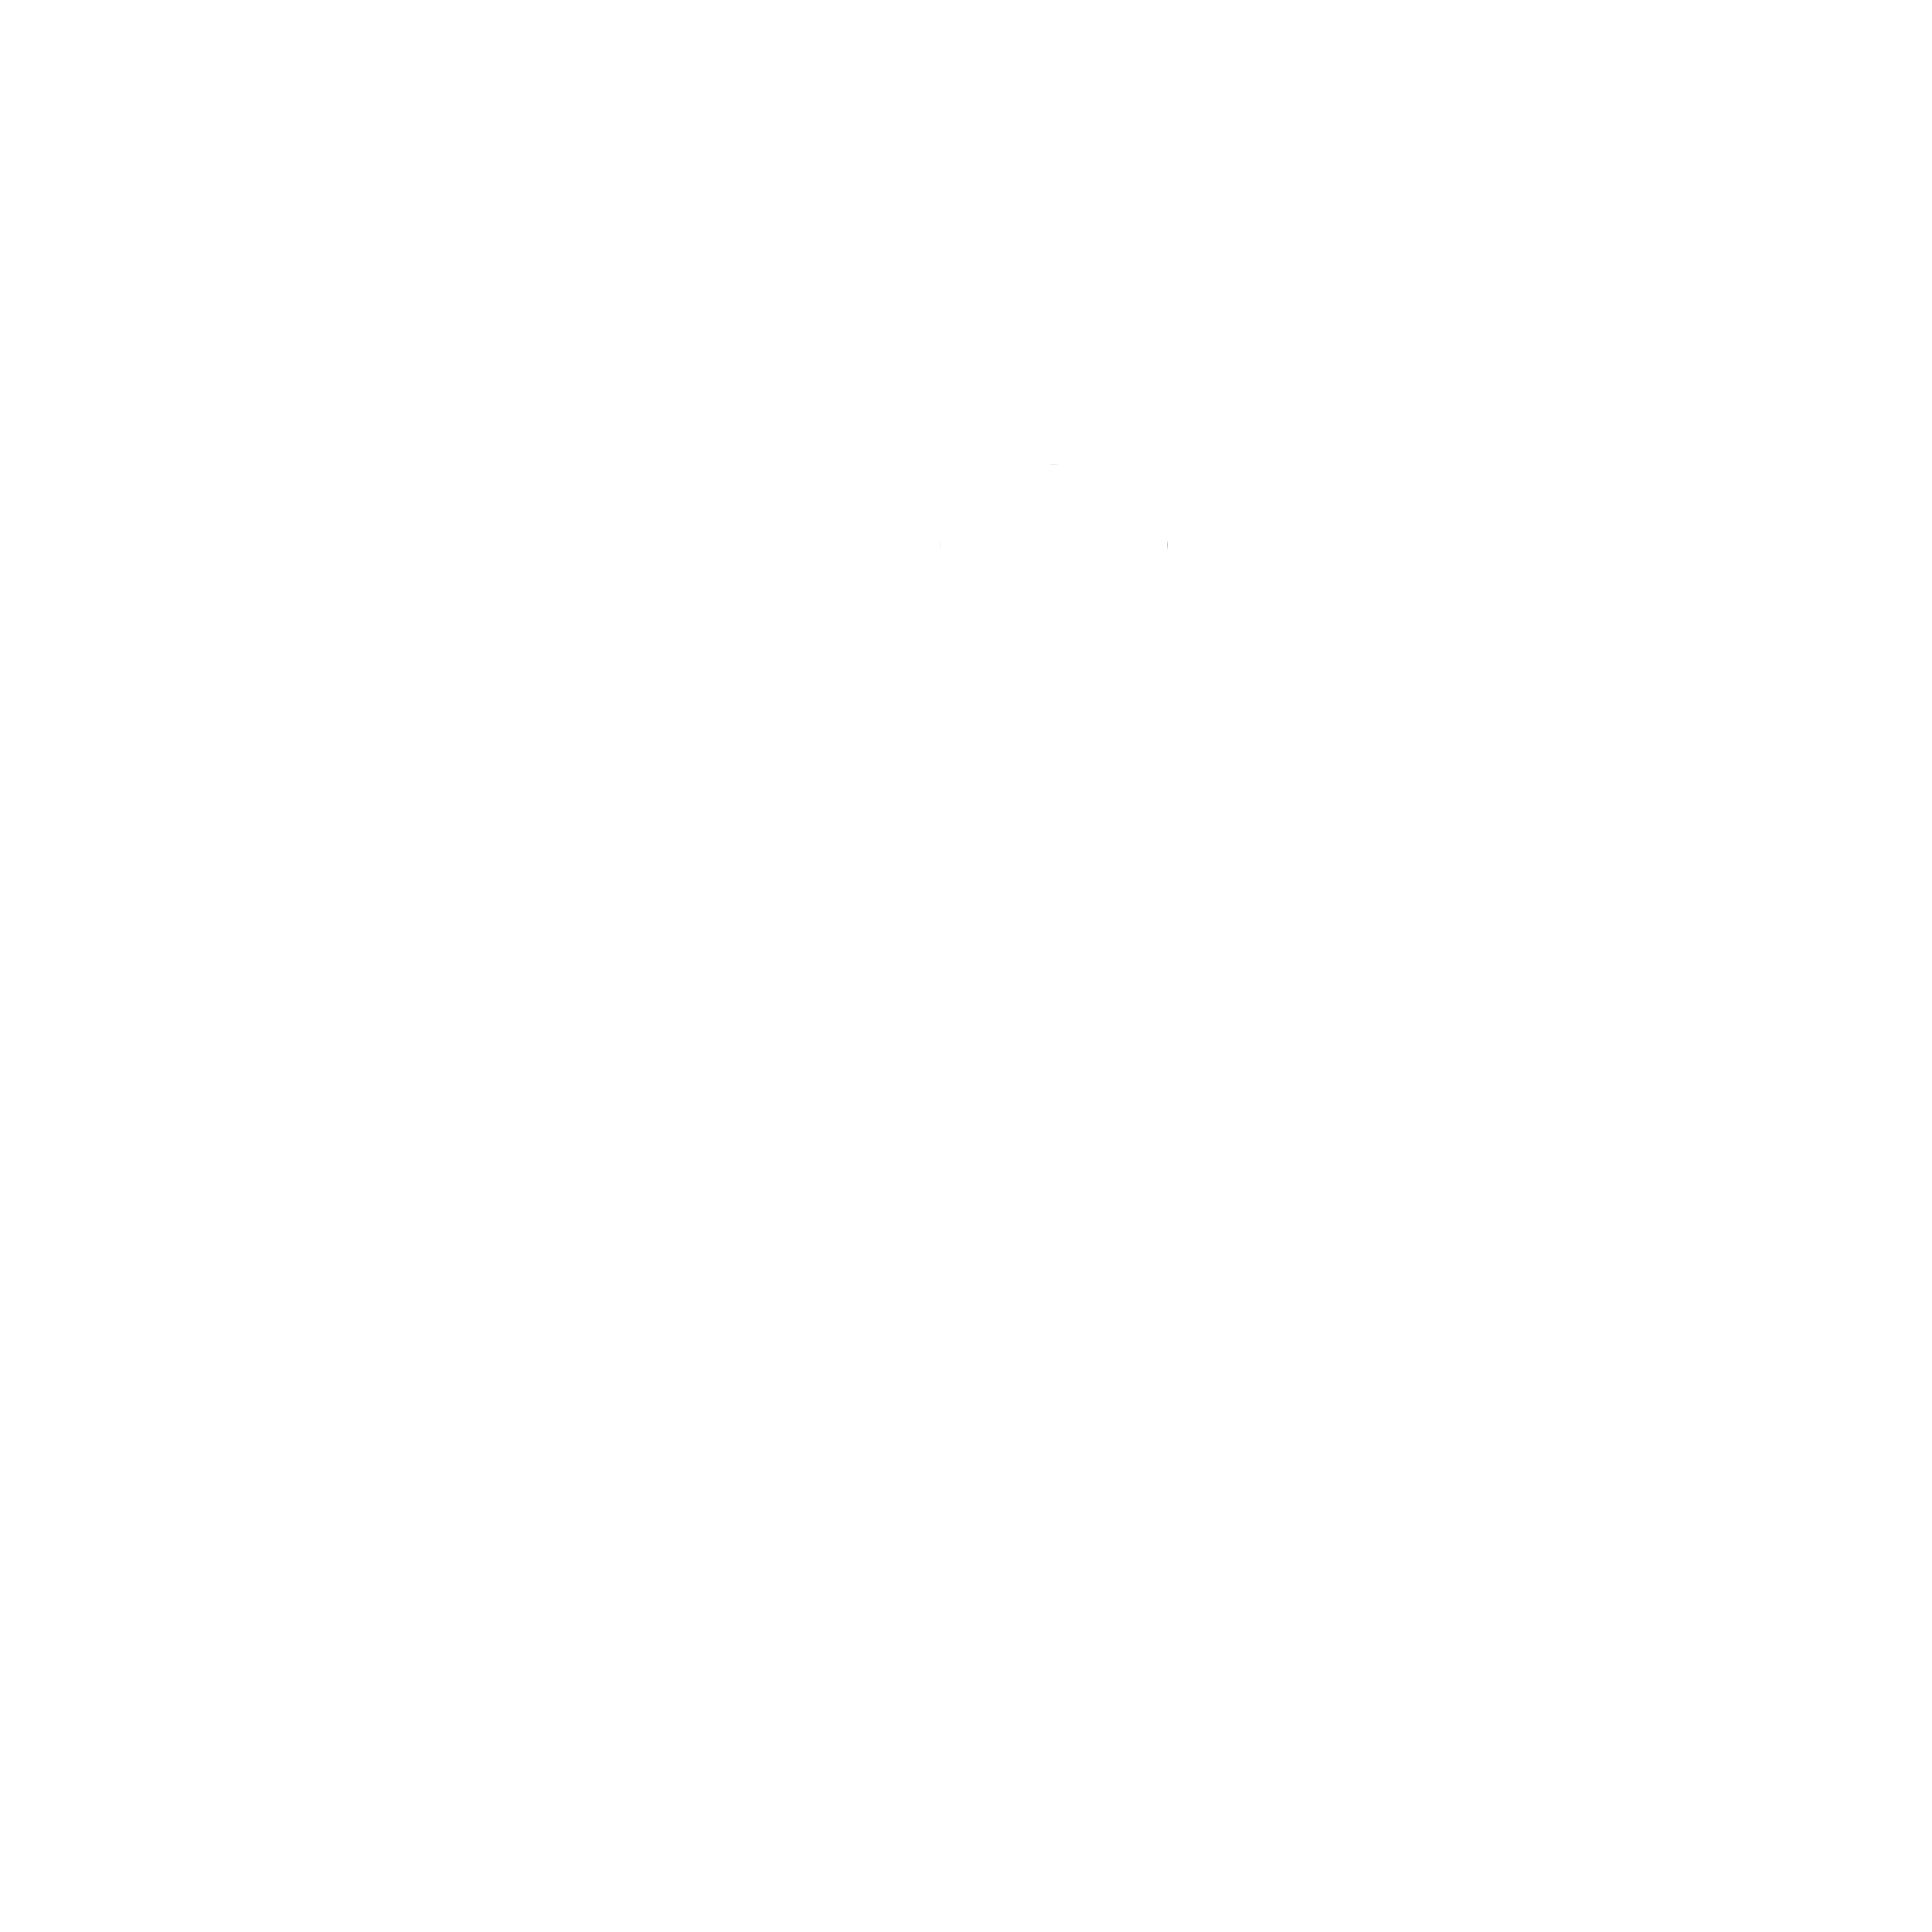 The MGL